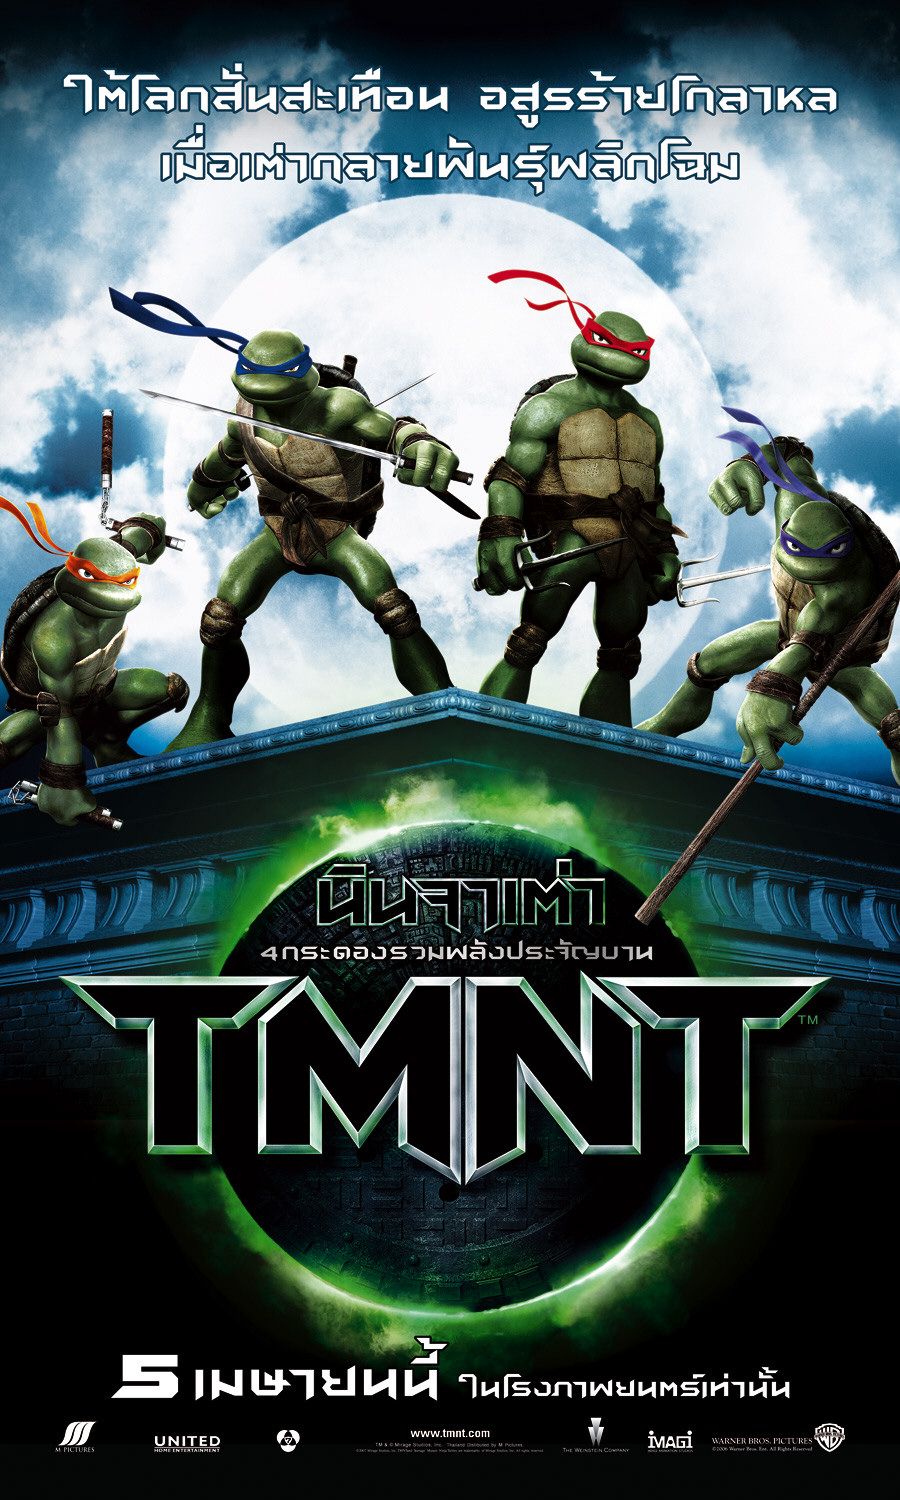 Extra Large Movie Poster Image for Teenage Mutant Ninja Turtles (#8 of 16)